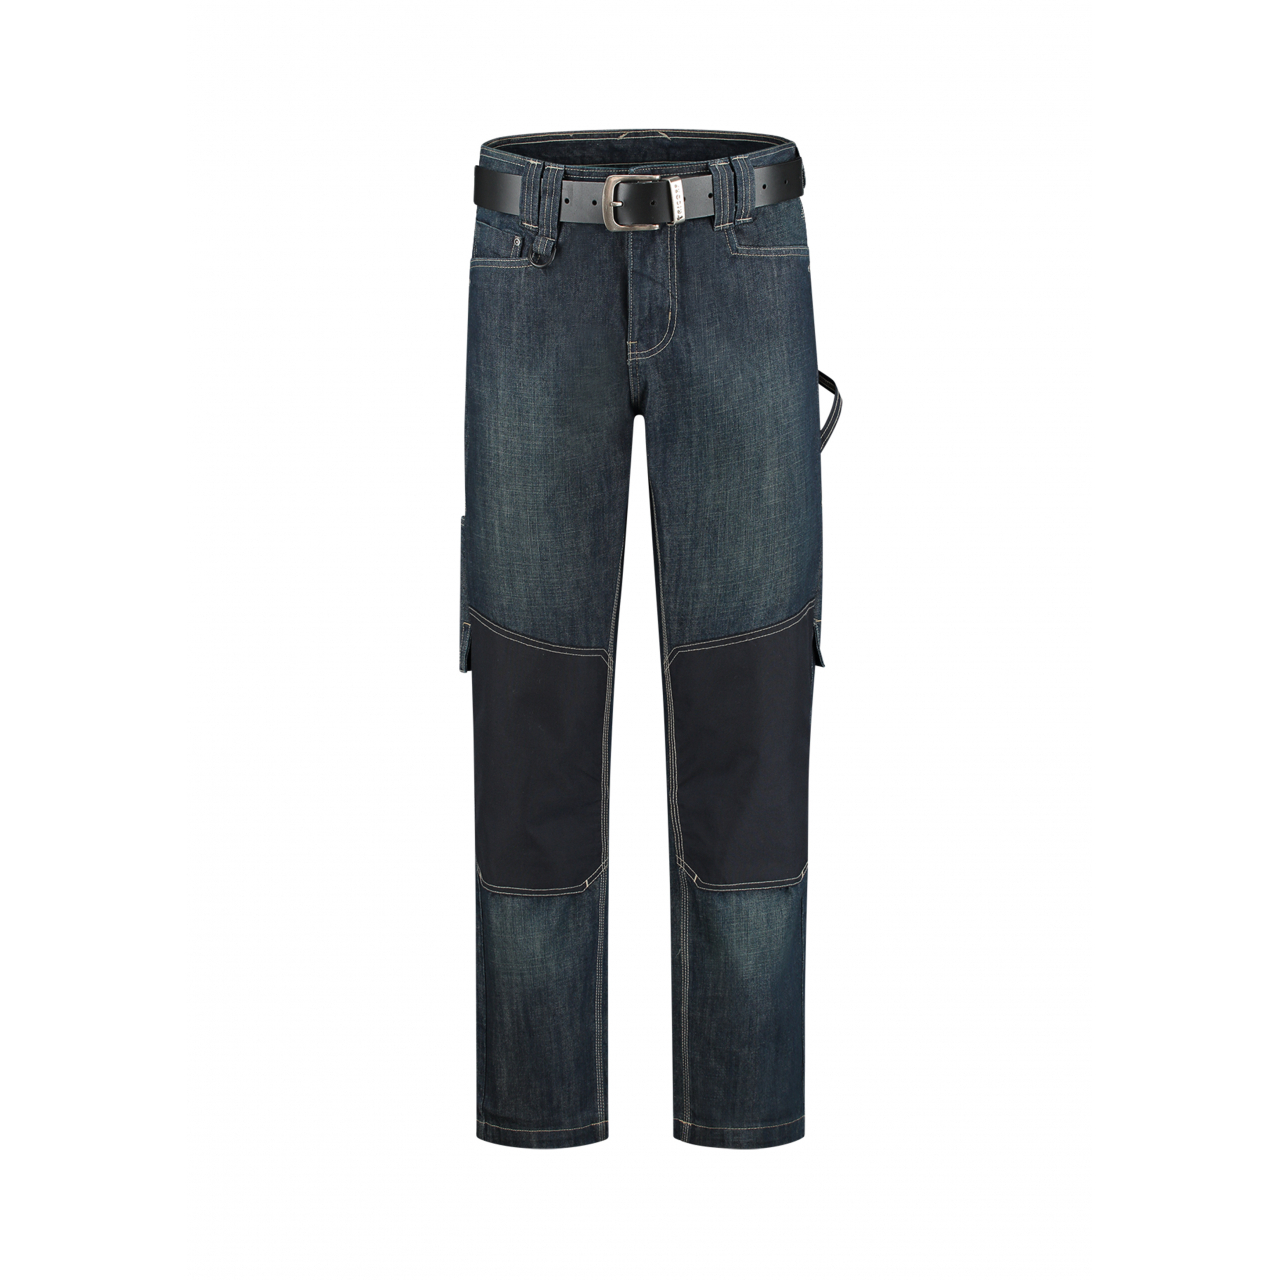 Pracovní džíny unisex Tricorp Work Jeans - denim, 33/32